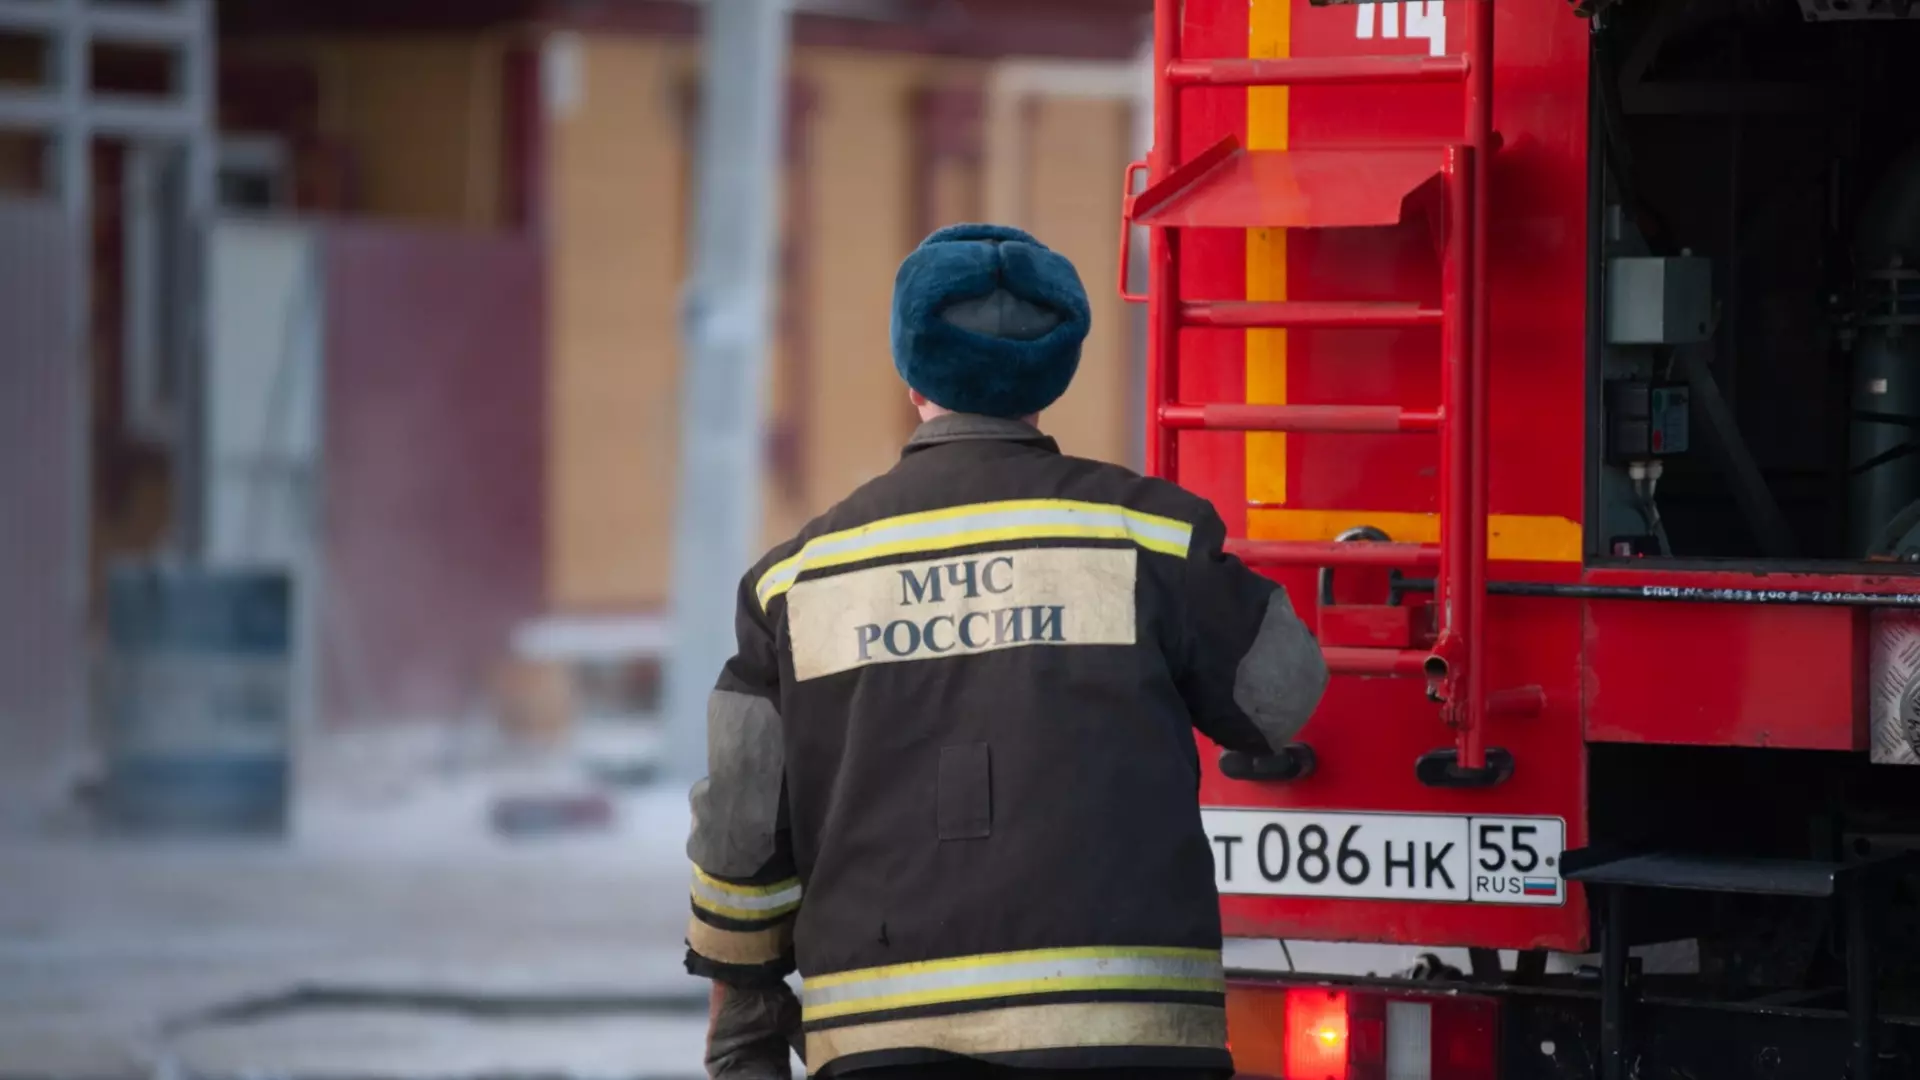 Пожарный из Ростова спасал людей по выходным и откачал кошку